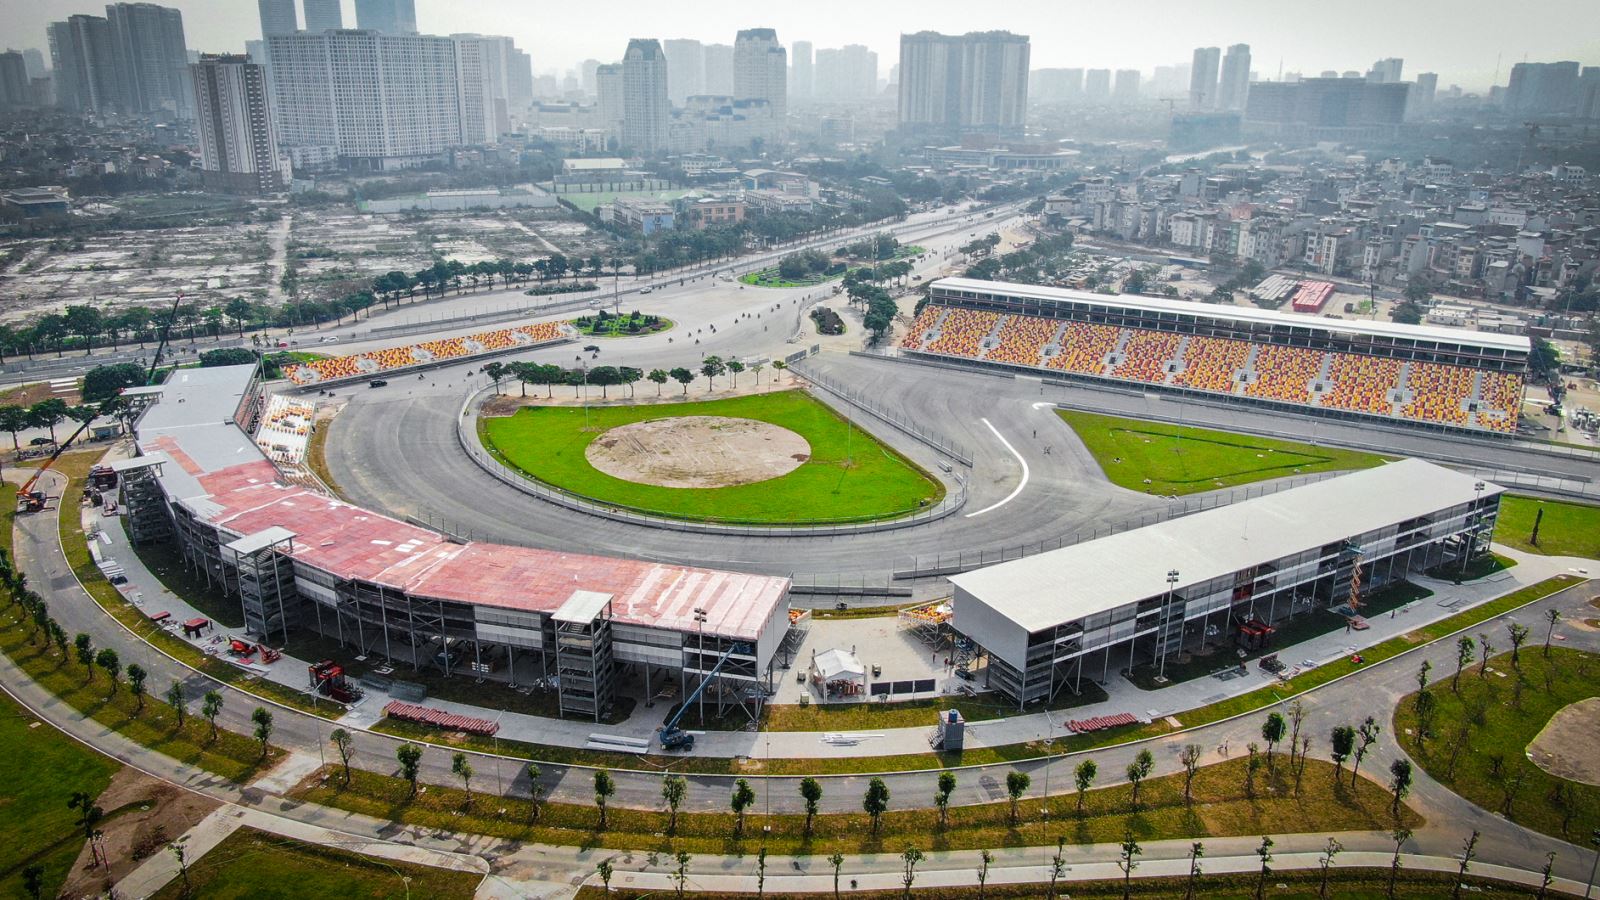 Trường đua F1 tại Hà Nội đã được hoàn tất. Ảnh: Trung Nguyên/Báo Tin tức.